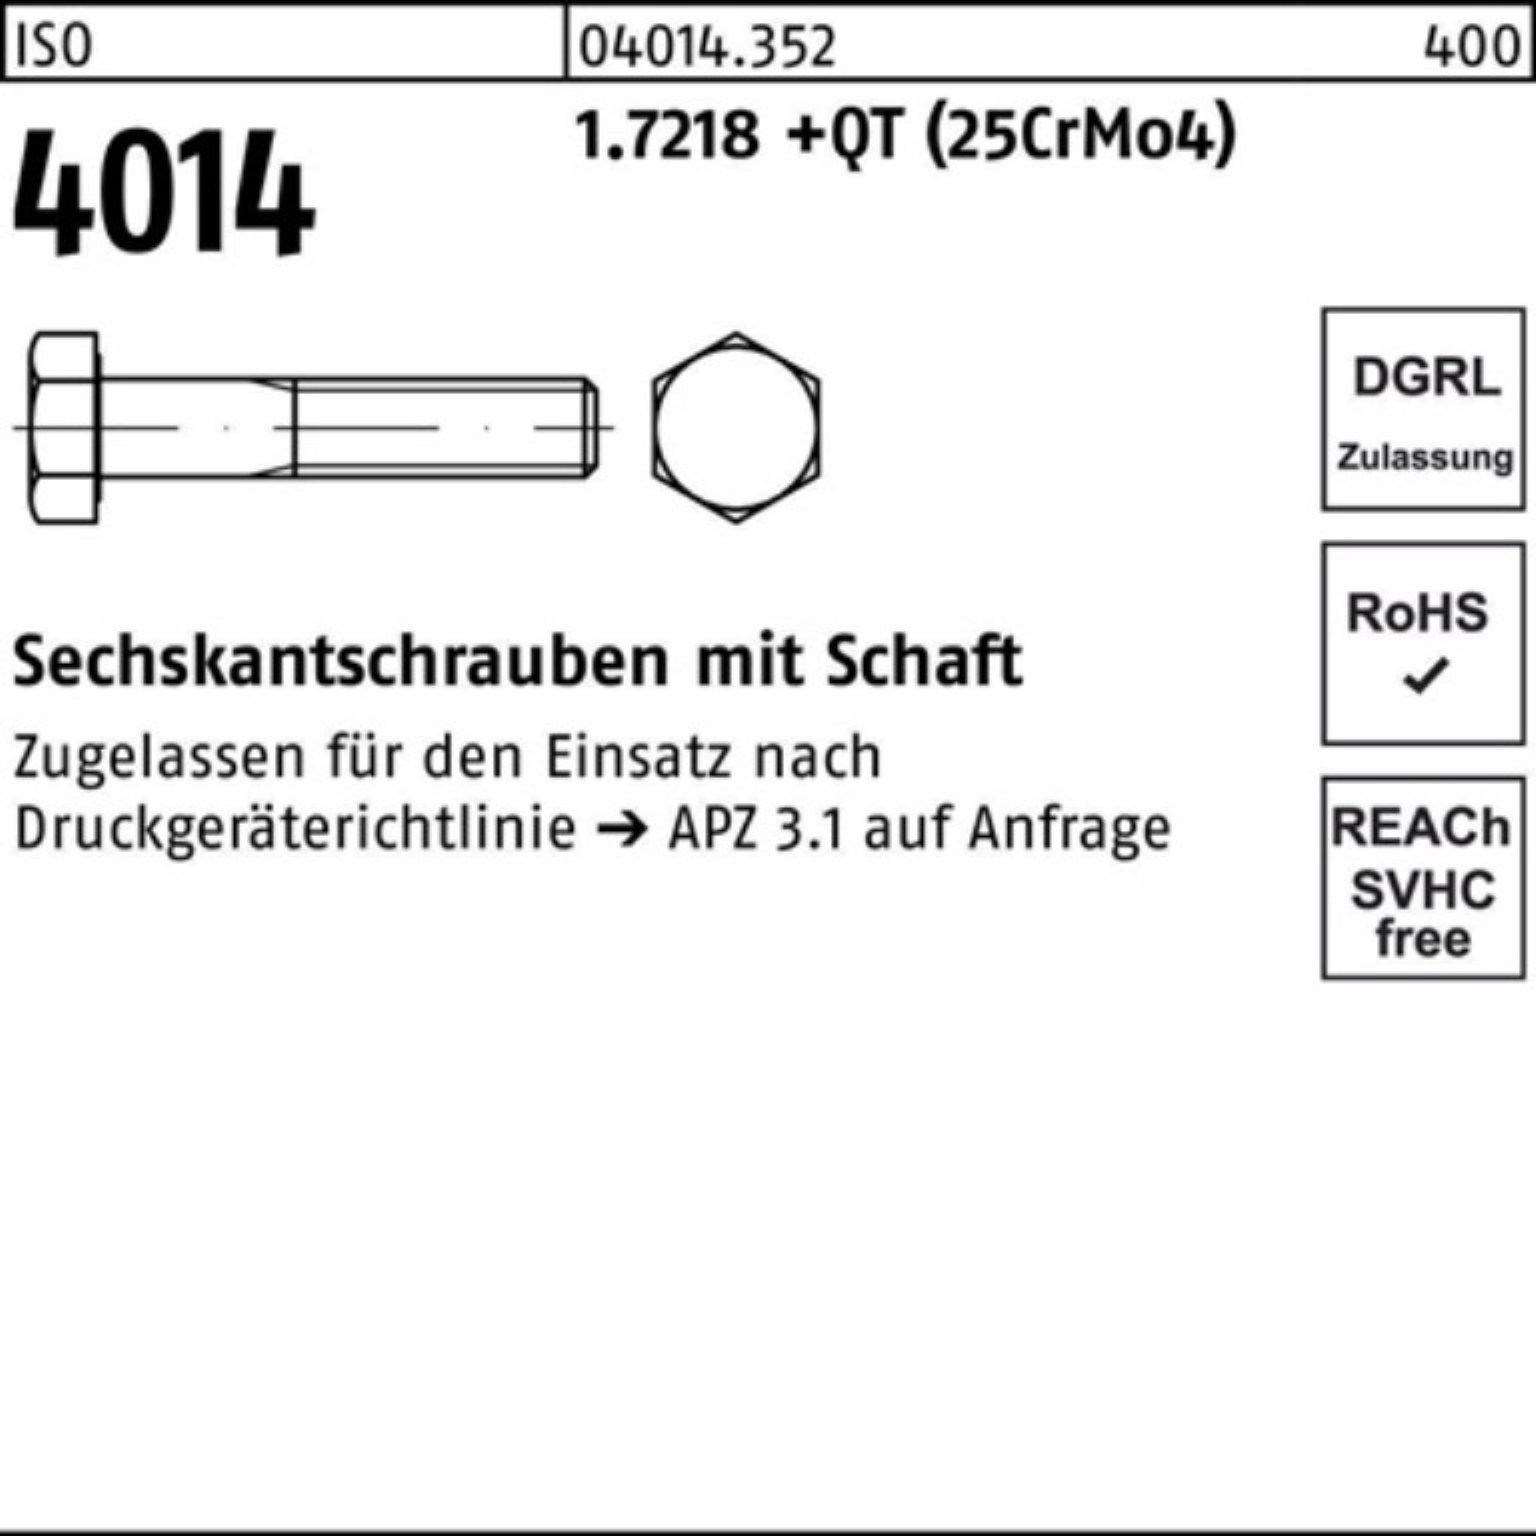 Bufab Sechskantschraube 100er Pack Sechskantschraube Schaft (25Cr 120 1.7218 ISO +QT M16x 4014